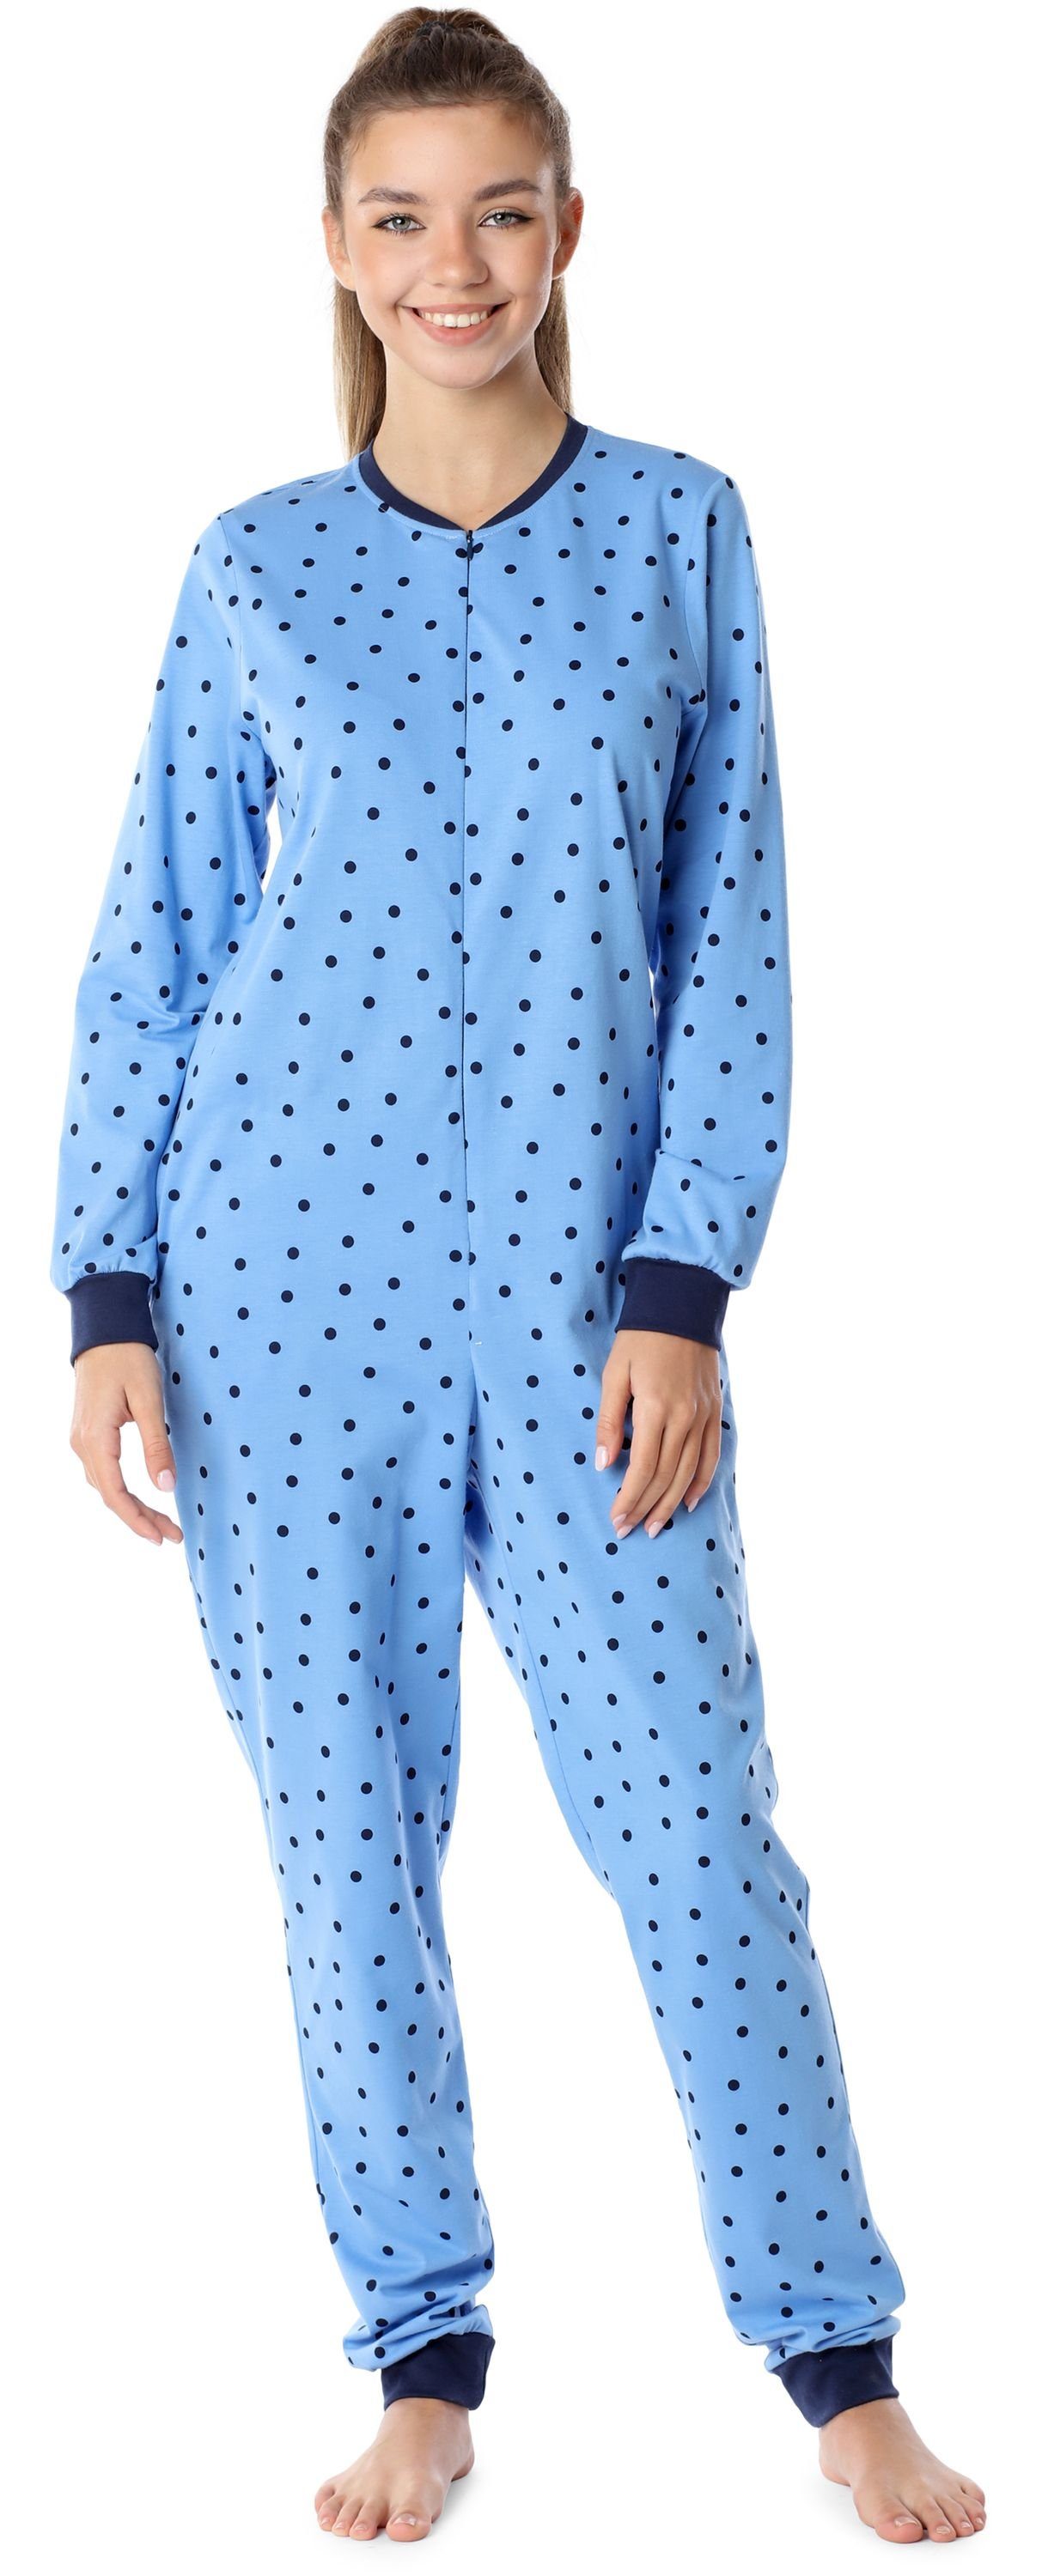 Merry Style Schlafanzug Mädchen Schlafanzug Schlafoverall Jugend MS10-235 Blaue/Punkte